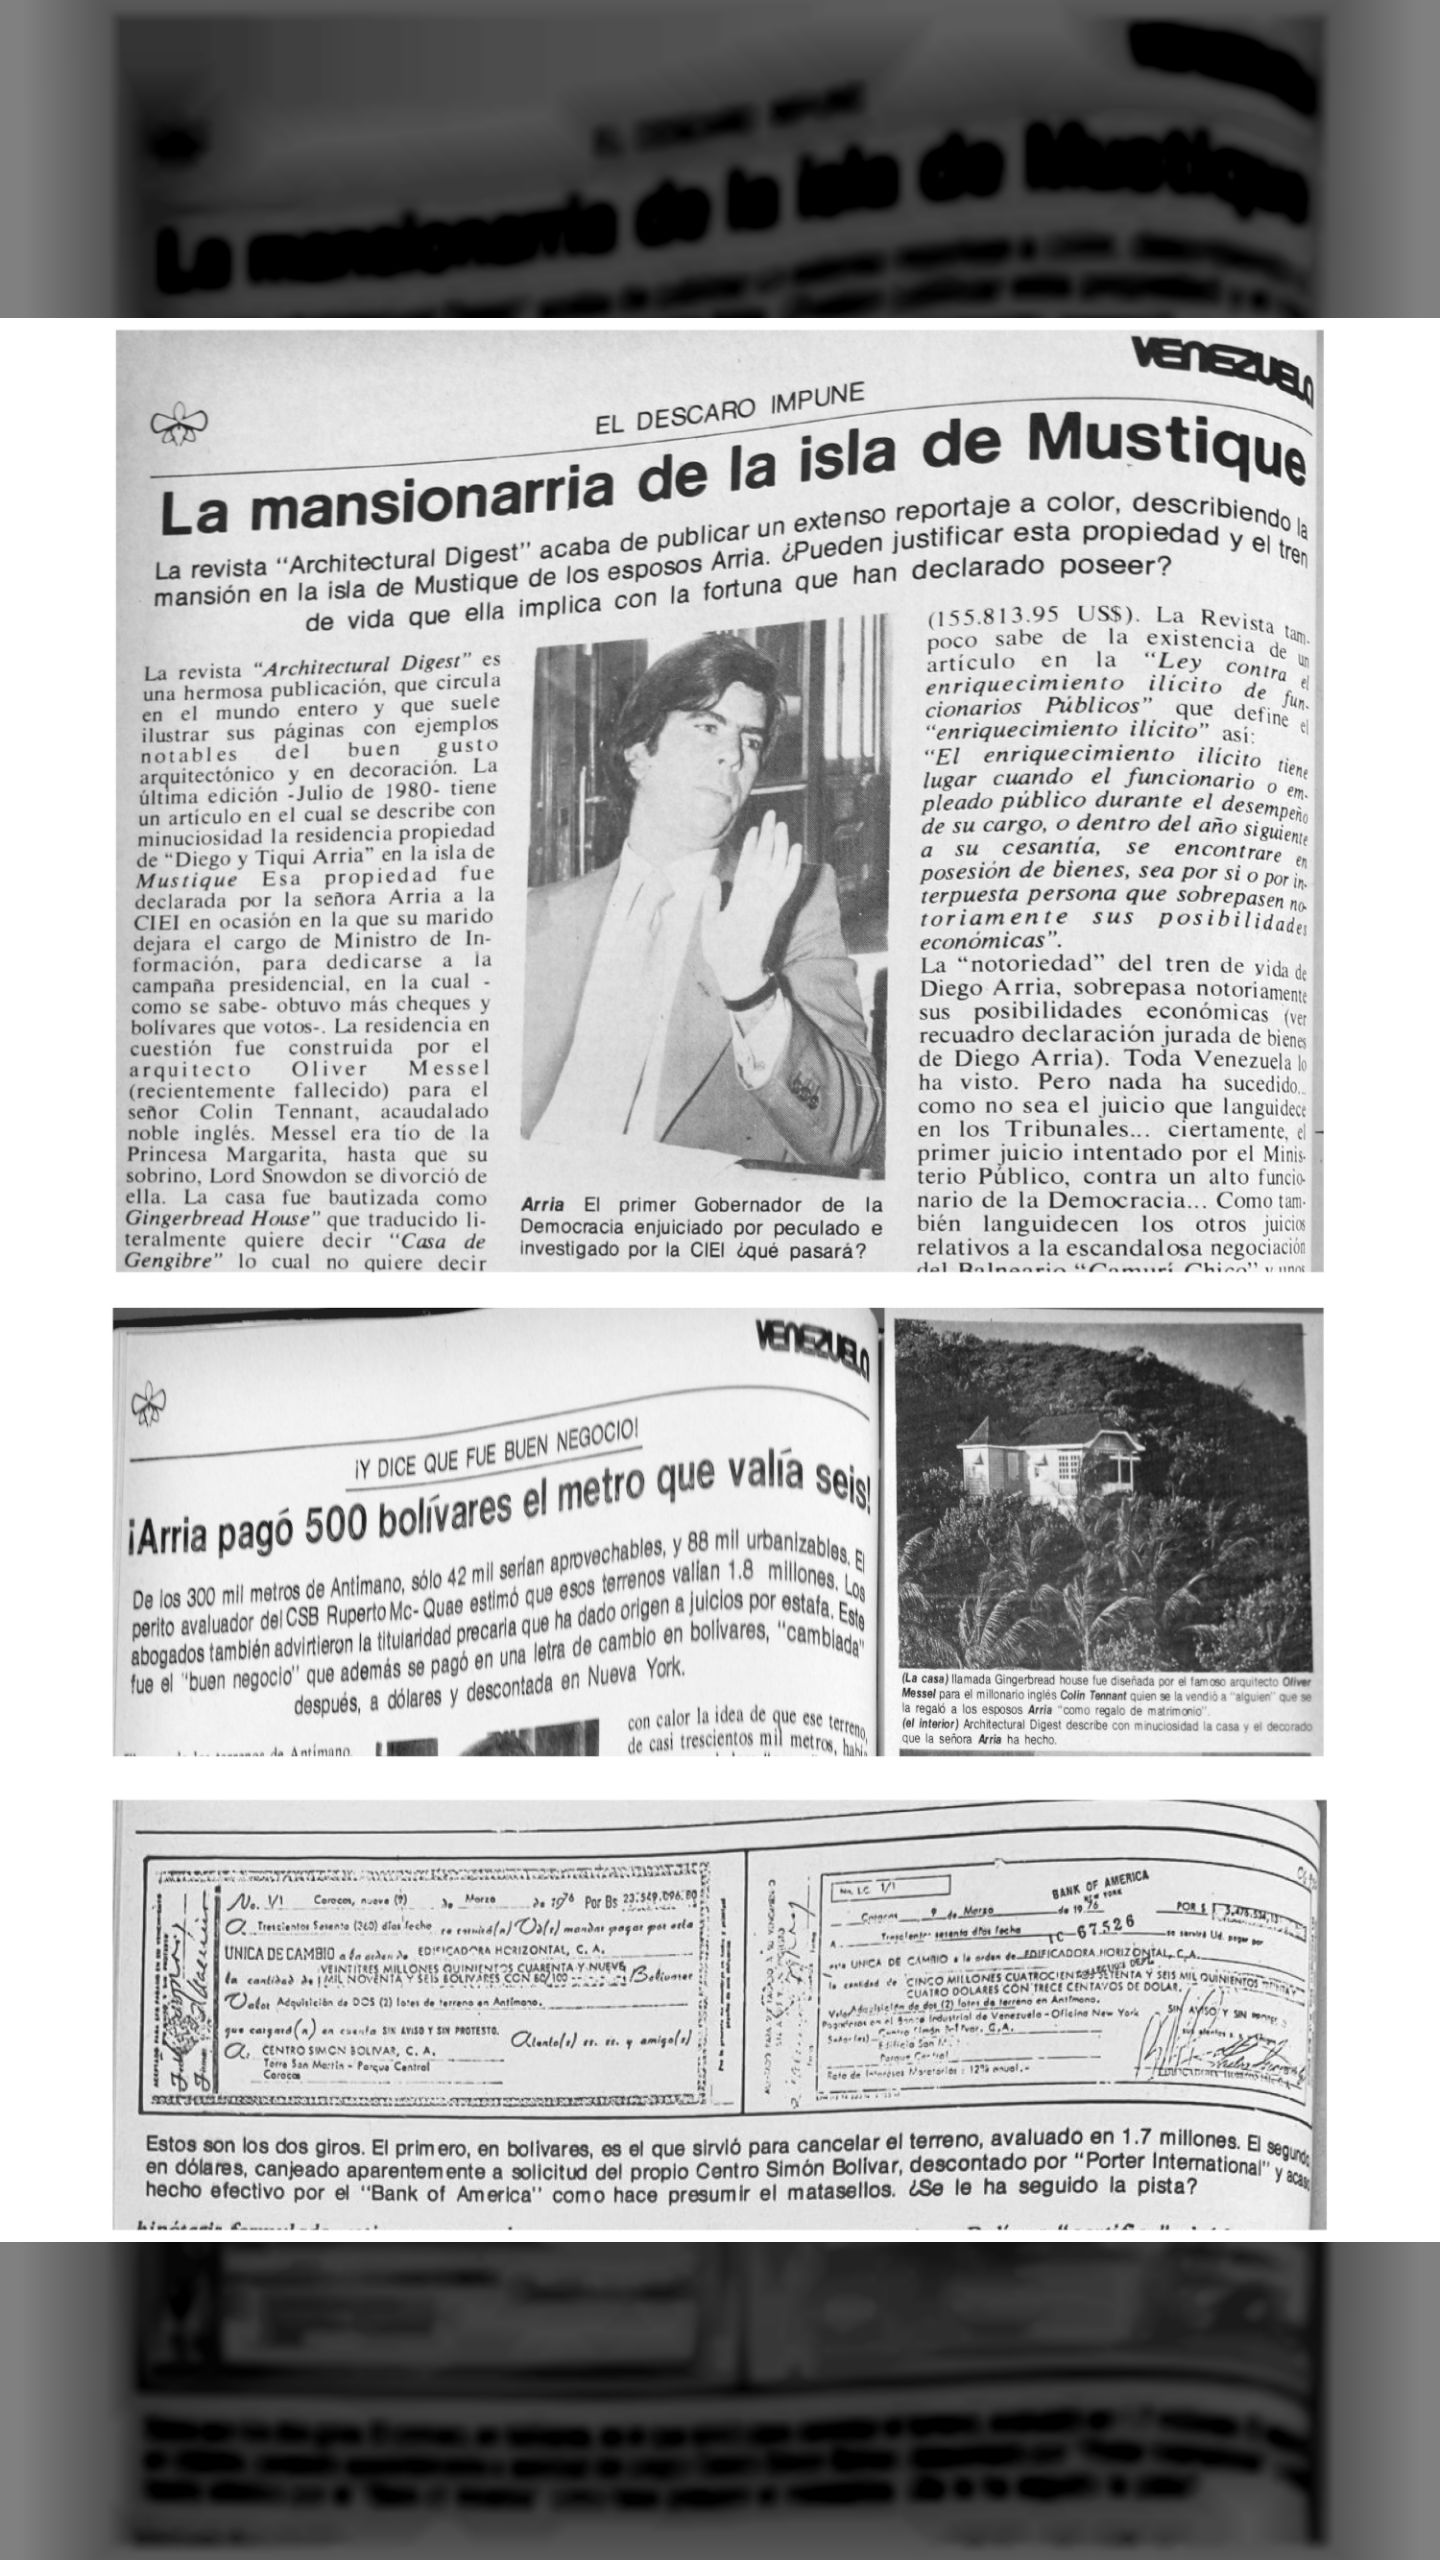 Descaro impune - La mansionarria de la isla de Mustique (Revista Resumen, 13 de julio 1980)